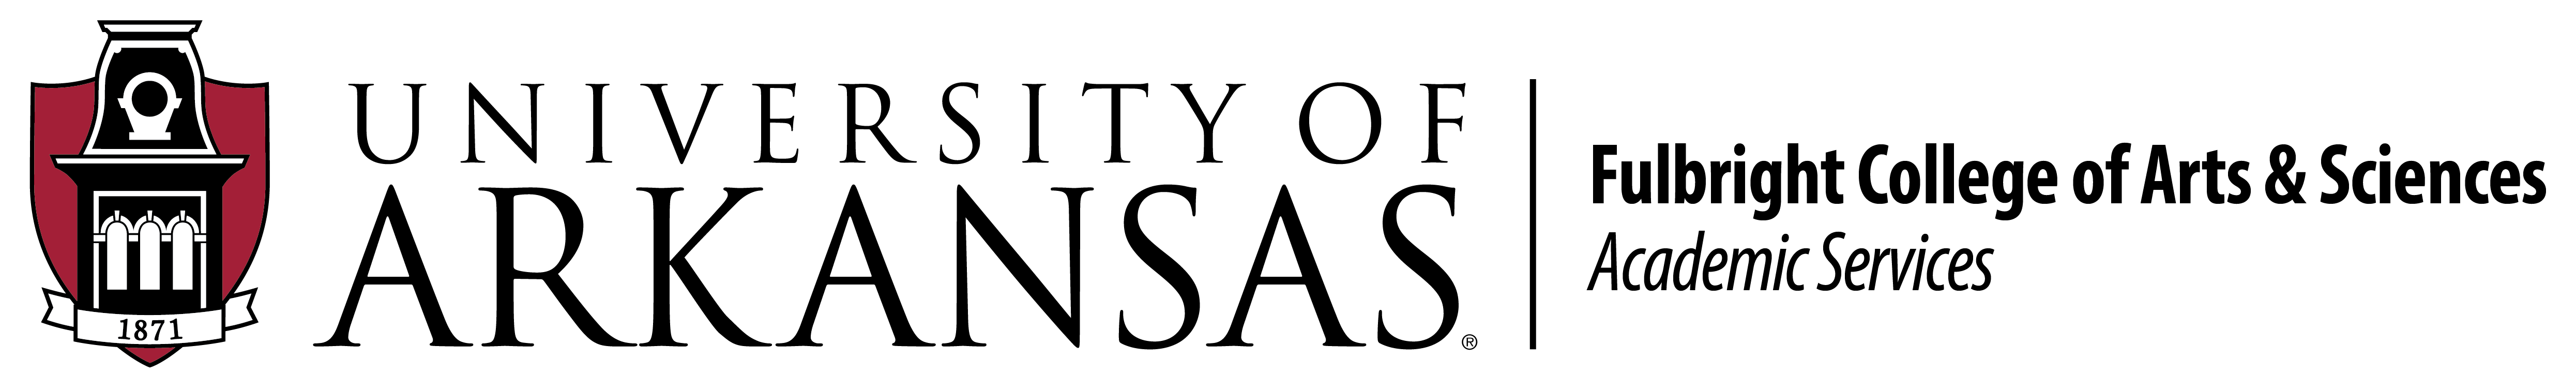 FCAS Long logo